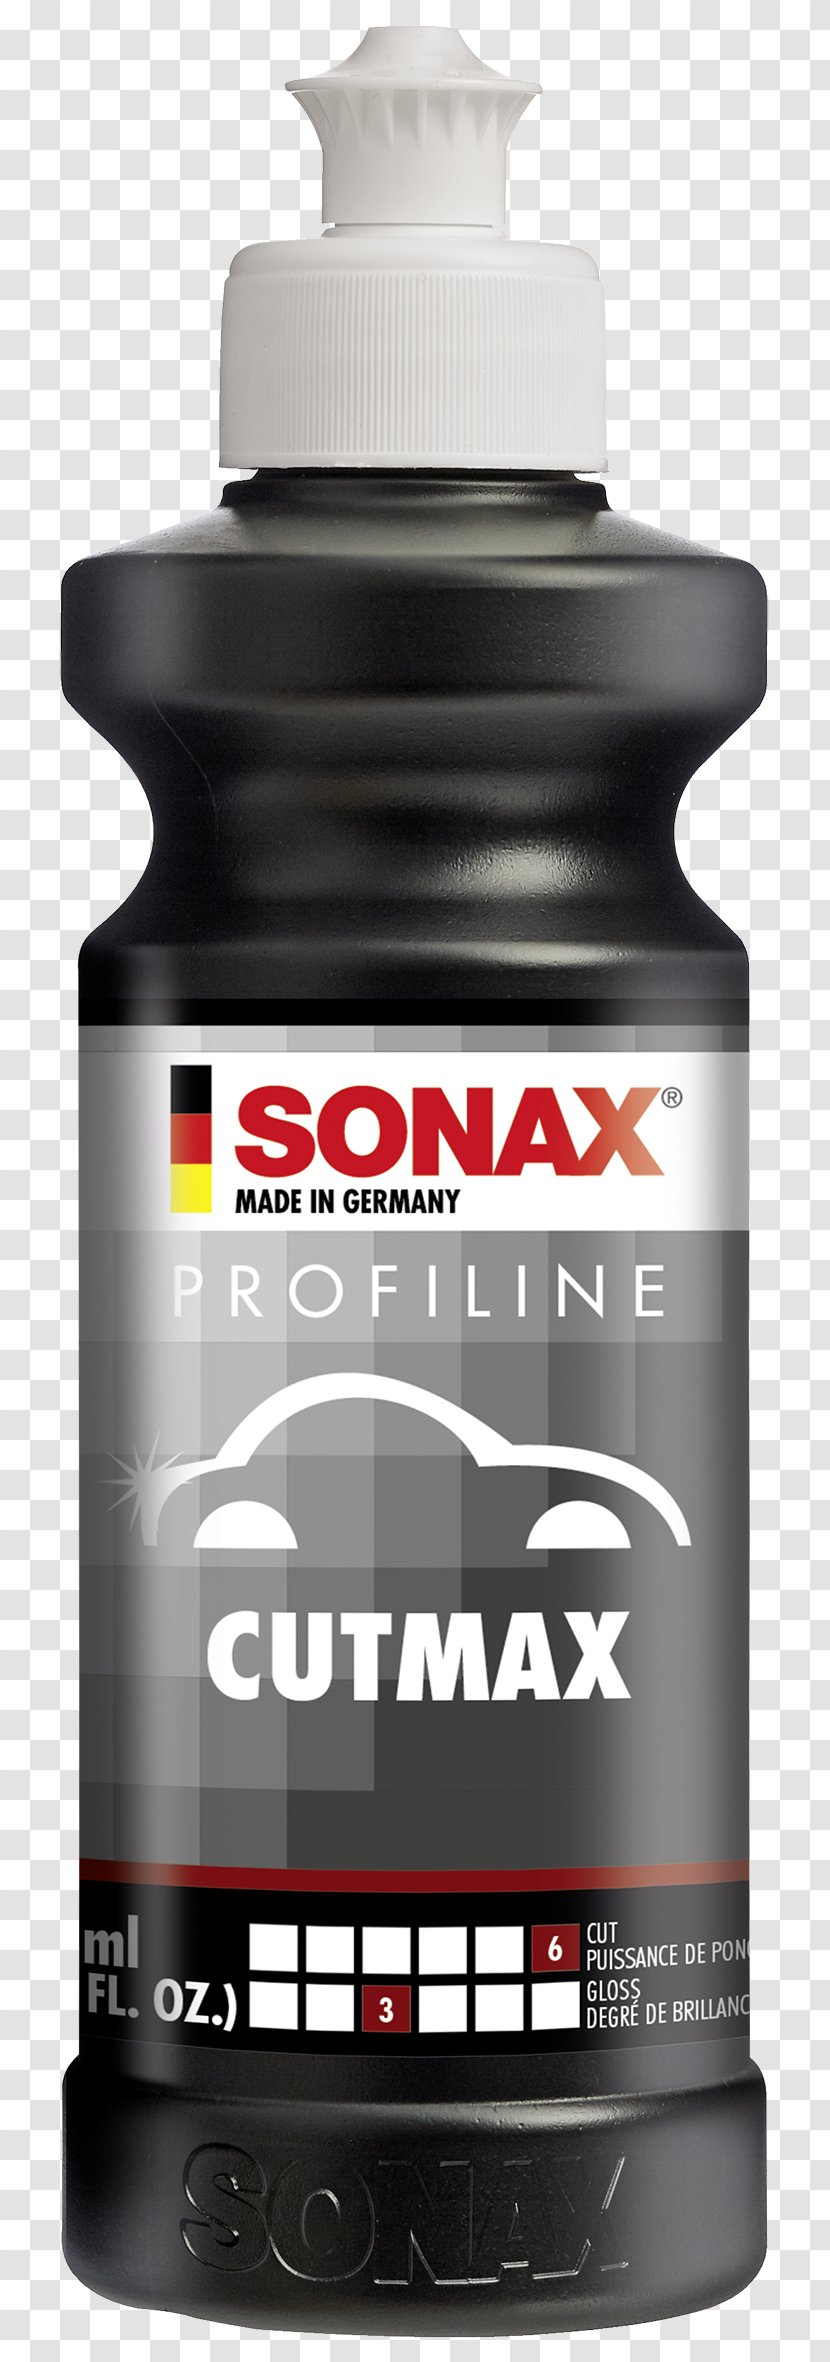 Sonax 224141 Profiline Perfect Finish Car Polish CUTMAX 02465000 ProfiLine Nano 02083000 - Brilliant Shine Detailer - Mobile Search Box Transparent PNG